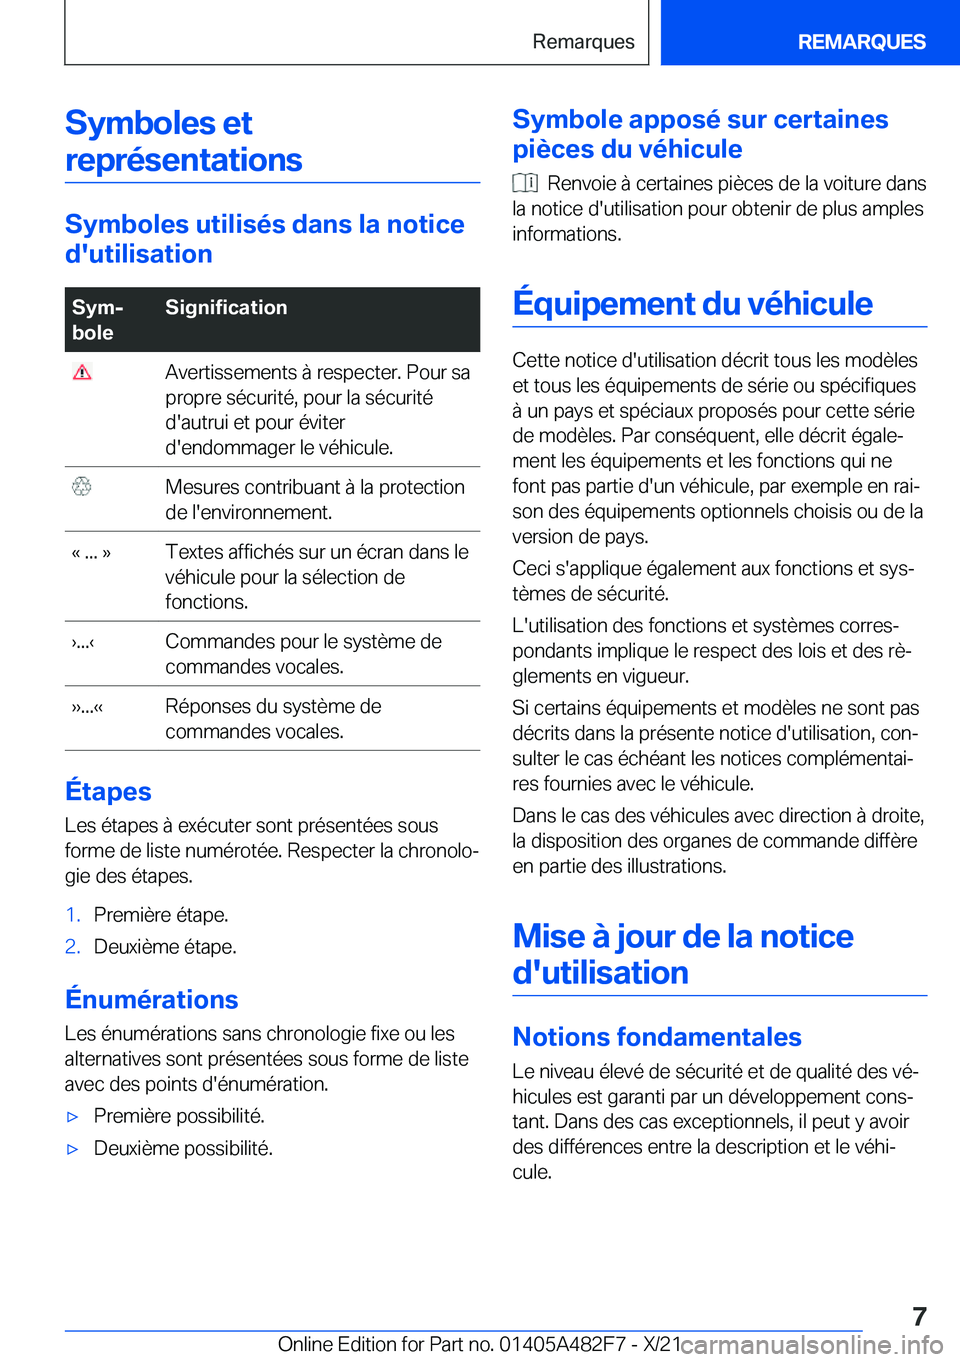 BMW X3 2022  Notices Demploi (in French) �S�y�m�b�o�l�e�s��e�t�r�e�p�r�é�s�e�n�t�a�t�i�o�n�s
�S�y�m�b�o�l�e�s��u�t�i�l�i�s�é�s��d�a�n�s��l�a��n�o�t�i�c�e
�d�'�u�t�i�l�i�s�a�t�i�o�n
�S�y�mj
�b�o�l�e�S�i�g�n�i�f�i�c�a�t�i�o�n��A�v